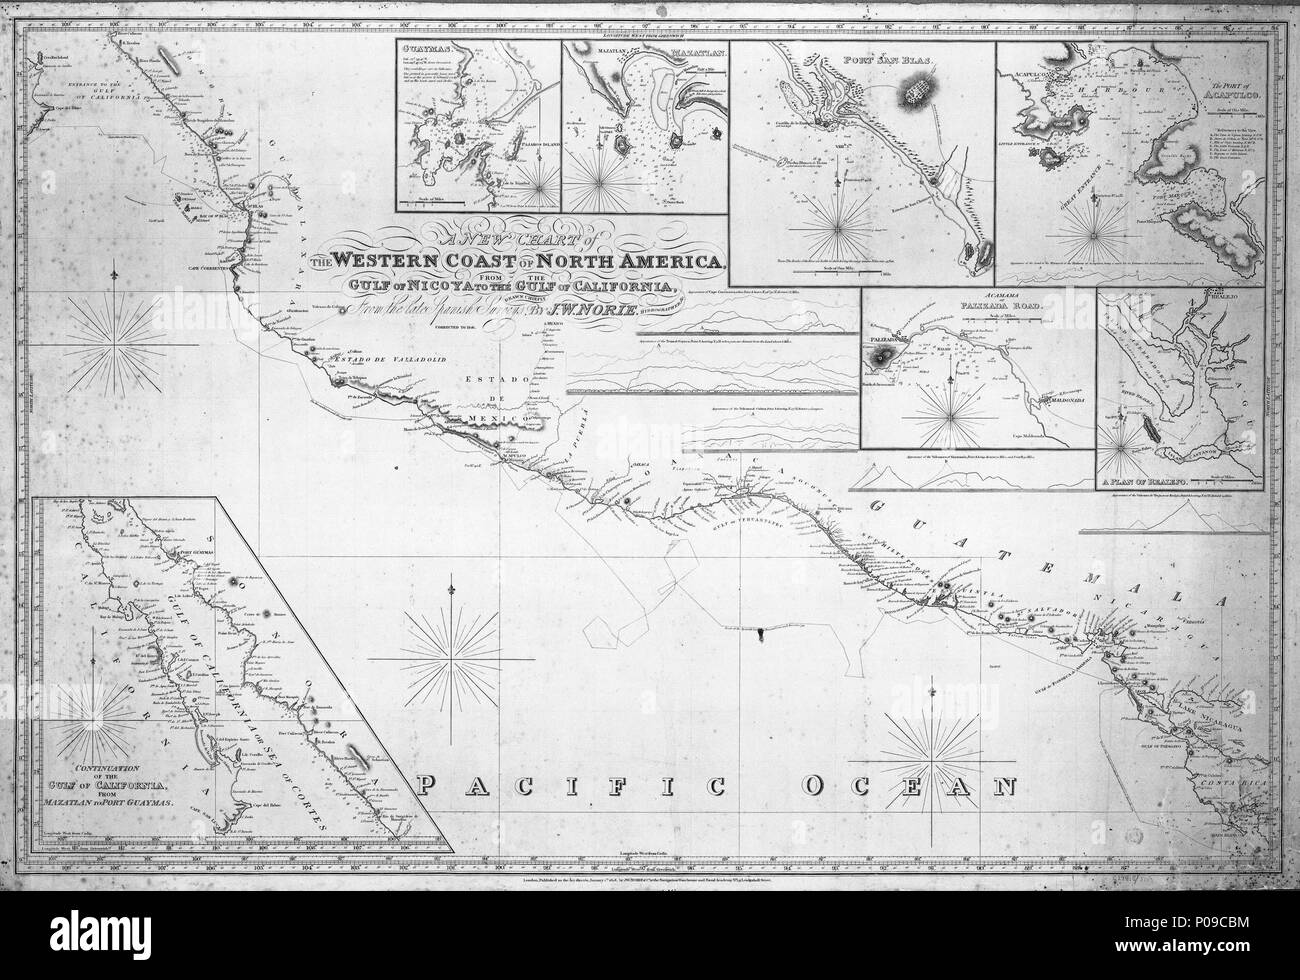 . Englisch: Ein neues Diagramm an der Westküste von Nordamerika. Vom Golf von Nicova an den Golf von Kalifornien. Maßstab: ca. 1:2.750.000. Blau - gesichert, Bettwäsche Chart mit sieben Einsätze und fünf Ansichten umrandet. Anschluss der Spanischen Korvetten und Descumbierta Atrevida 1791. Längengrad westlich von Greenwich. Längengrad westlich von Cadiz. Einsätze: 1. Guaymas ca. 1 : 75.000 (bar); 2. Mazatlan ca. 1:30.000 (bar); 3. Hafen San Blas ca. 1 : 27.000 (bar); 4. Der Hafen von Acapulco ca. 1:50.000 (bar); 5. Acamama oder palizada Straße ca. 1:240.000 (bar); 6. Ein Plan der Realjo ca. 1 : 75.000 (bar); 7. Fortsetzung der Stockfoto